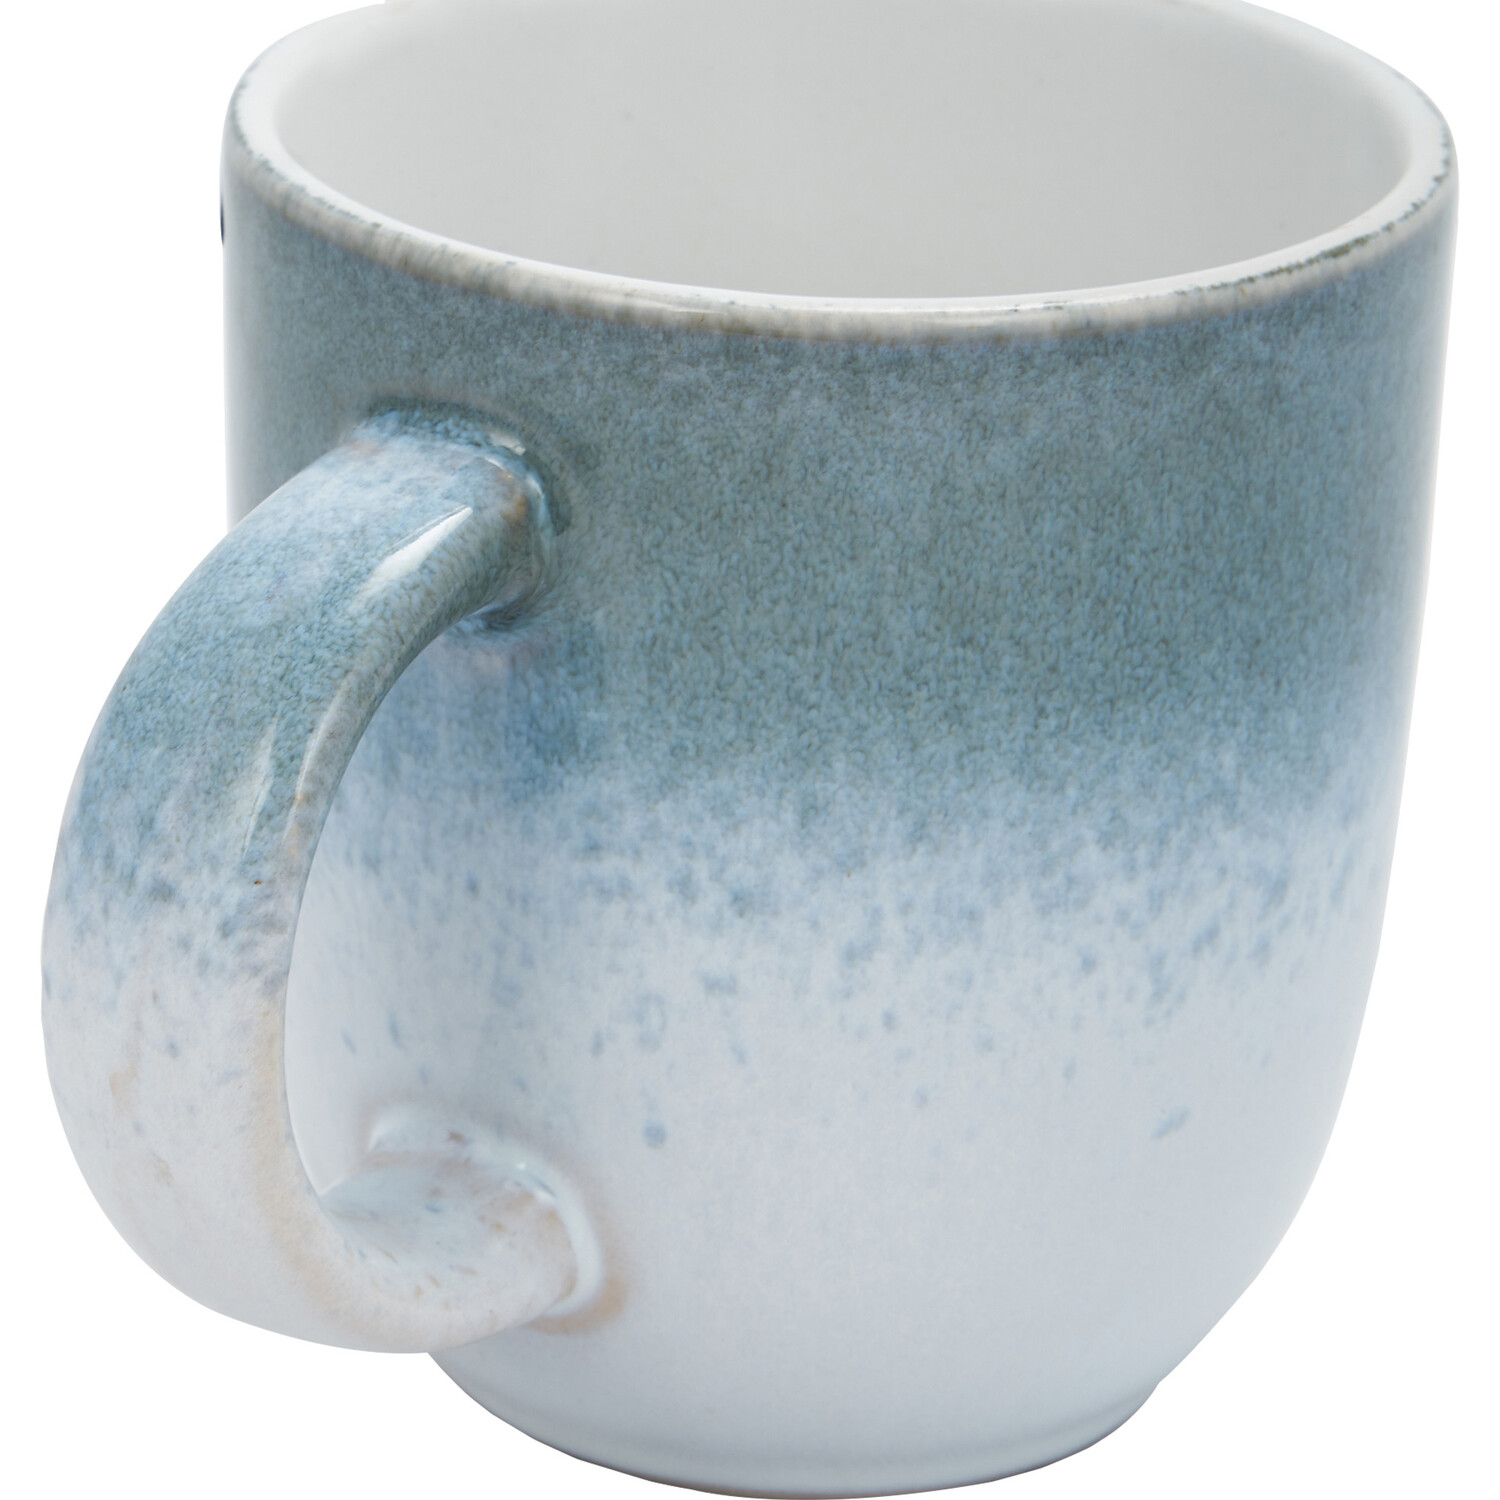 Santorini Reactive Glaze Mug - Blue Image 3